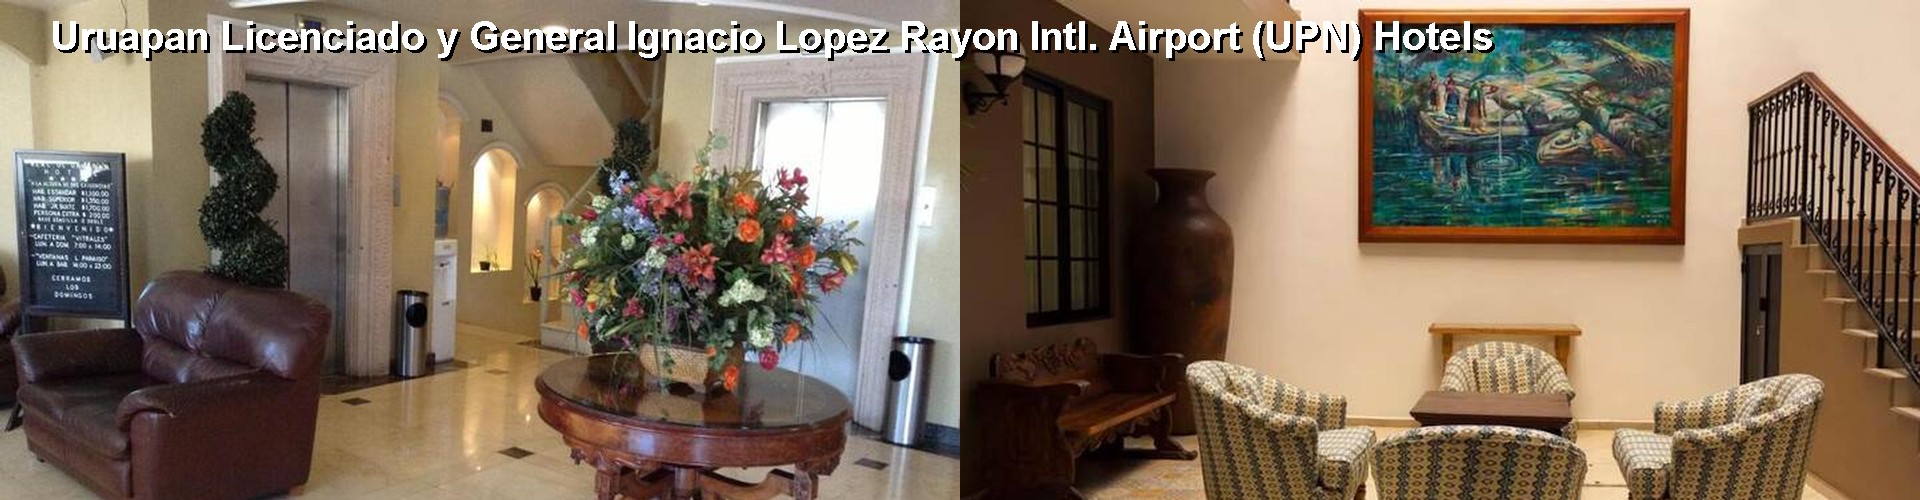 5 Best Hotels near Uruapan Licenciado y General Ignacio Lopez Rayon Intl. Airport (UPN)